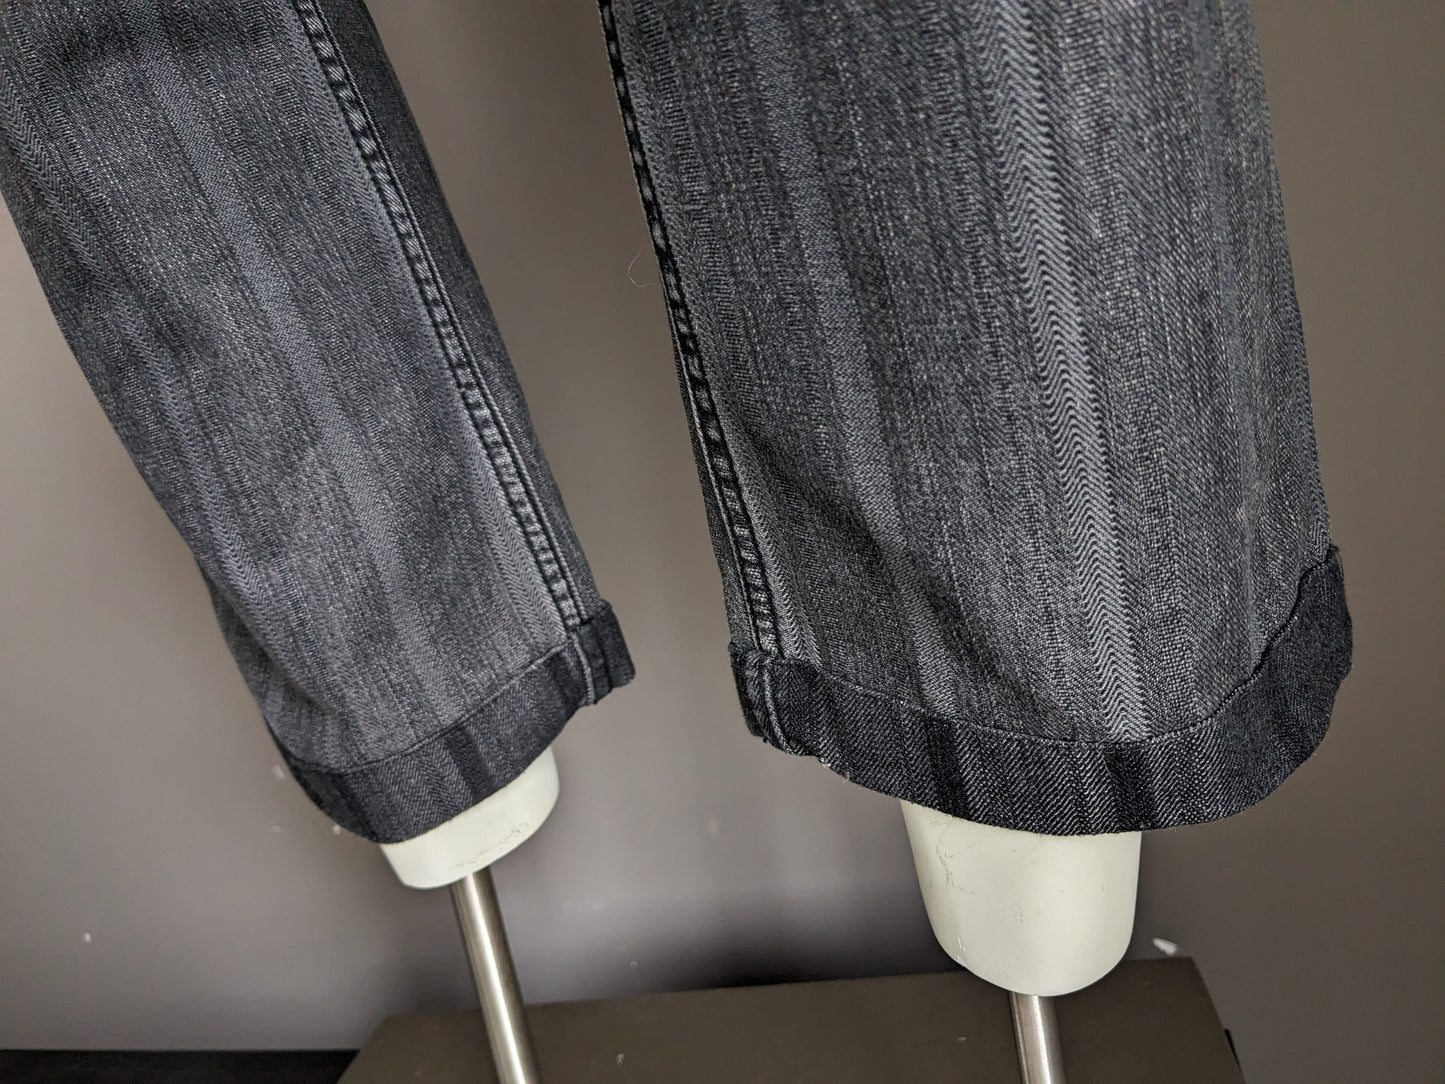 Kult -Edition -Jeans mit Auftragsanwendungen. Grau schwarz gestreift. Größe W32 - L28.